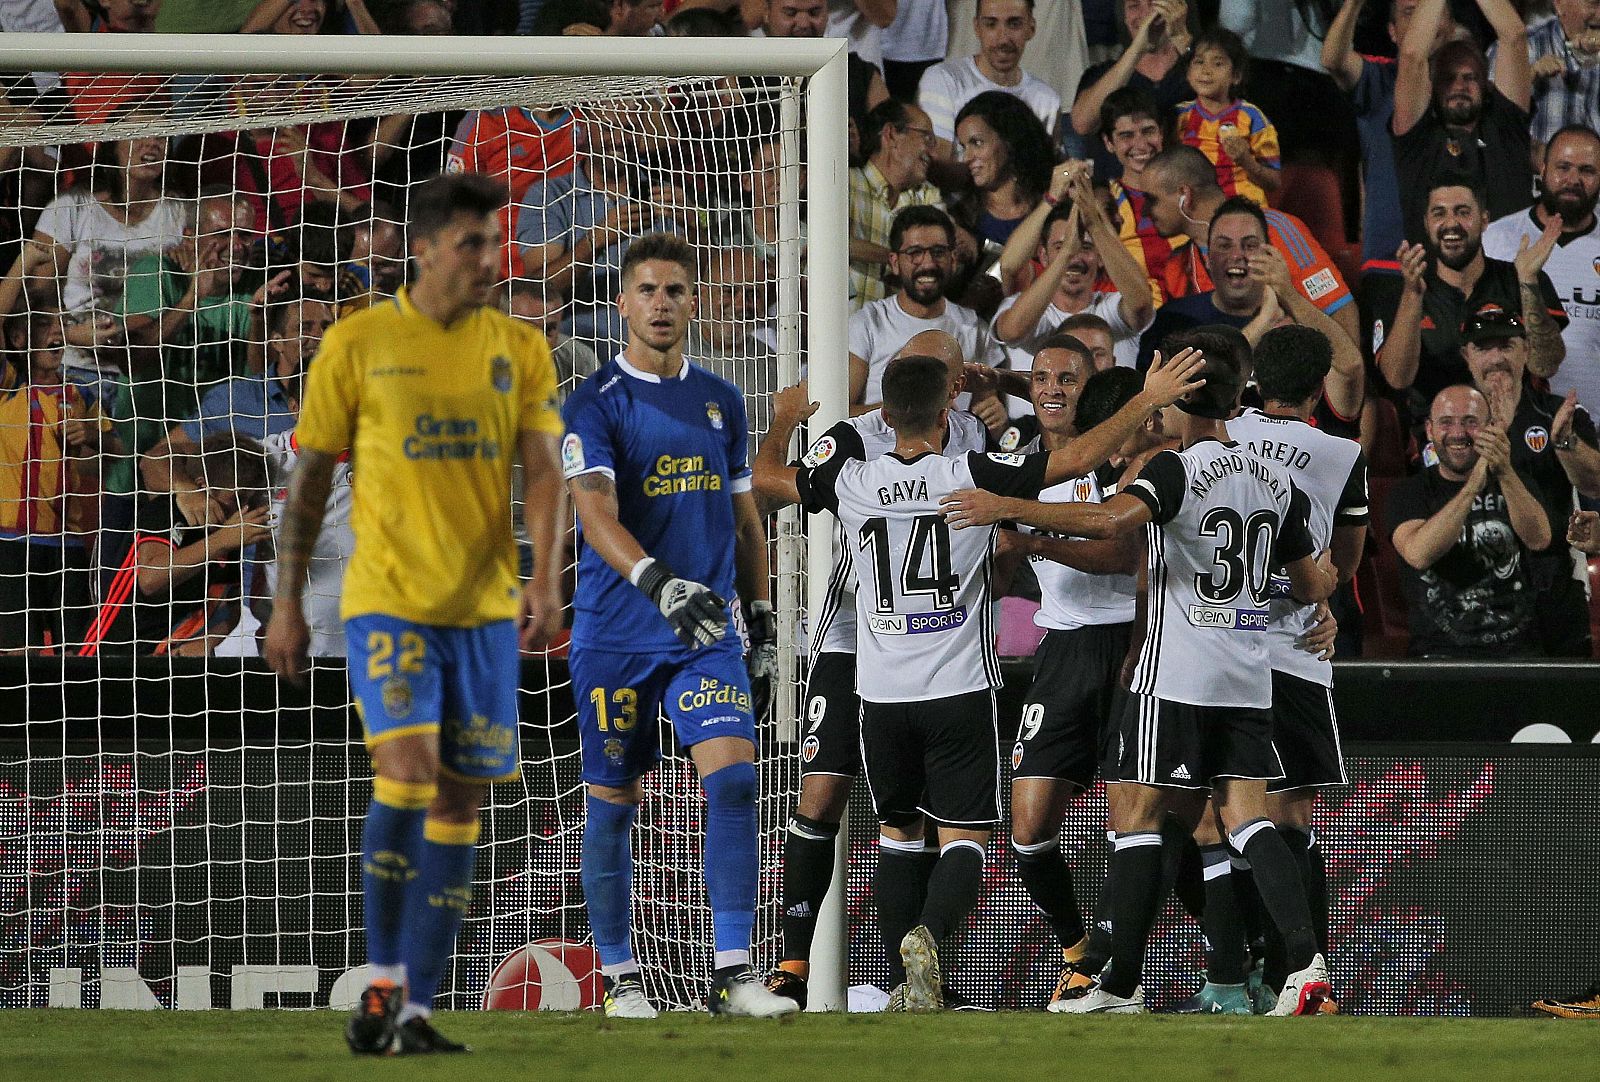 Los jugadores del Valencia CF celebran el gol de Zaza frente a UD Las Palmas.